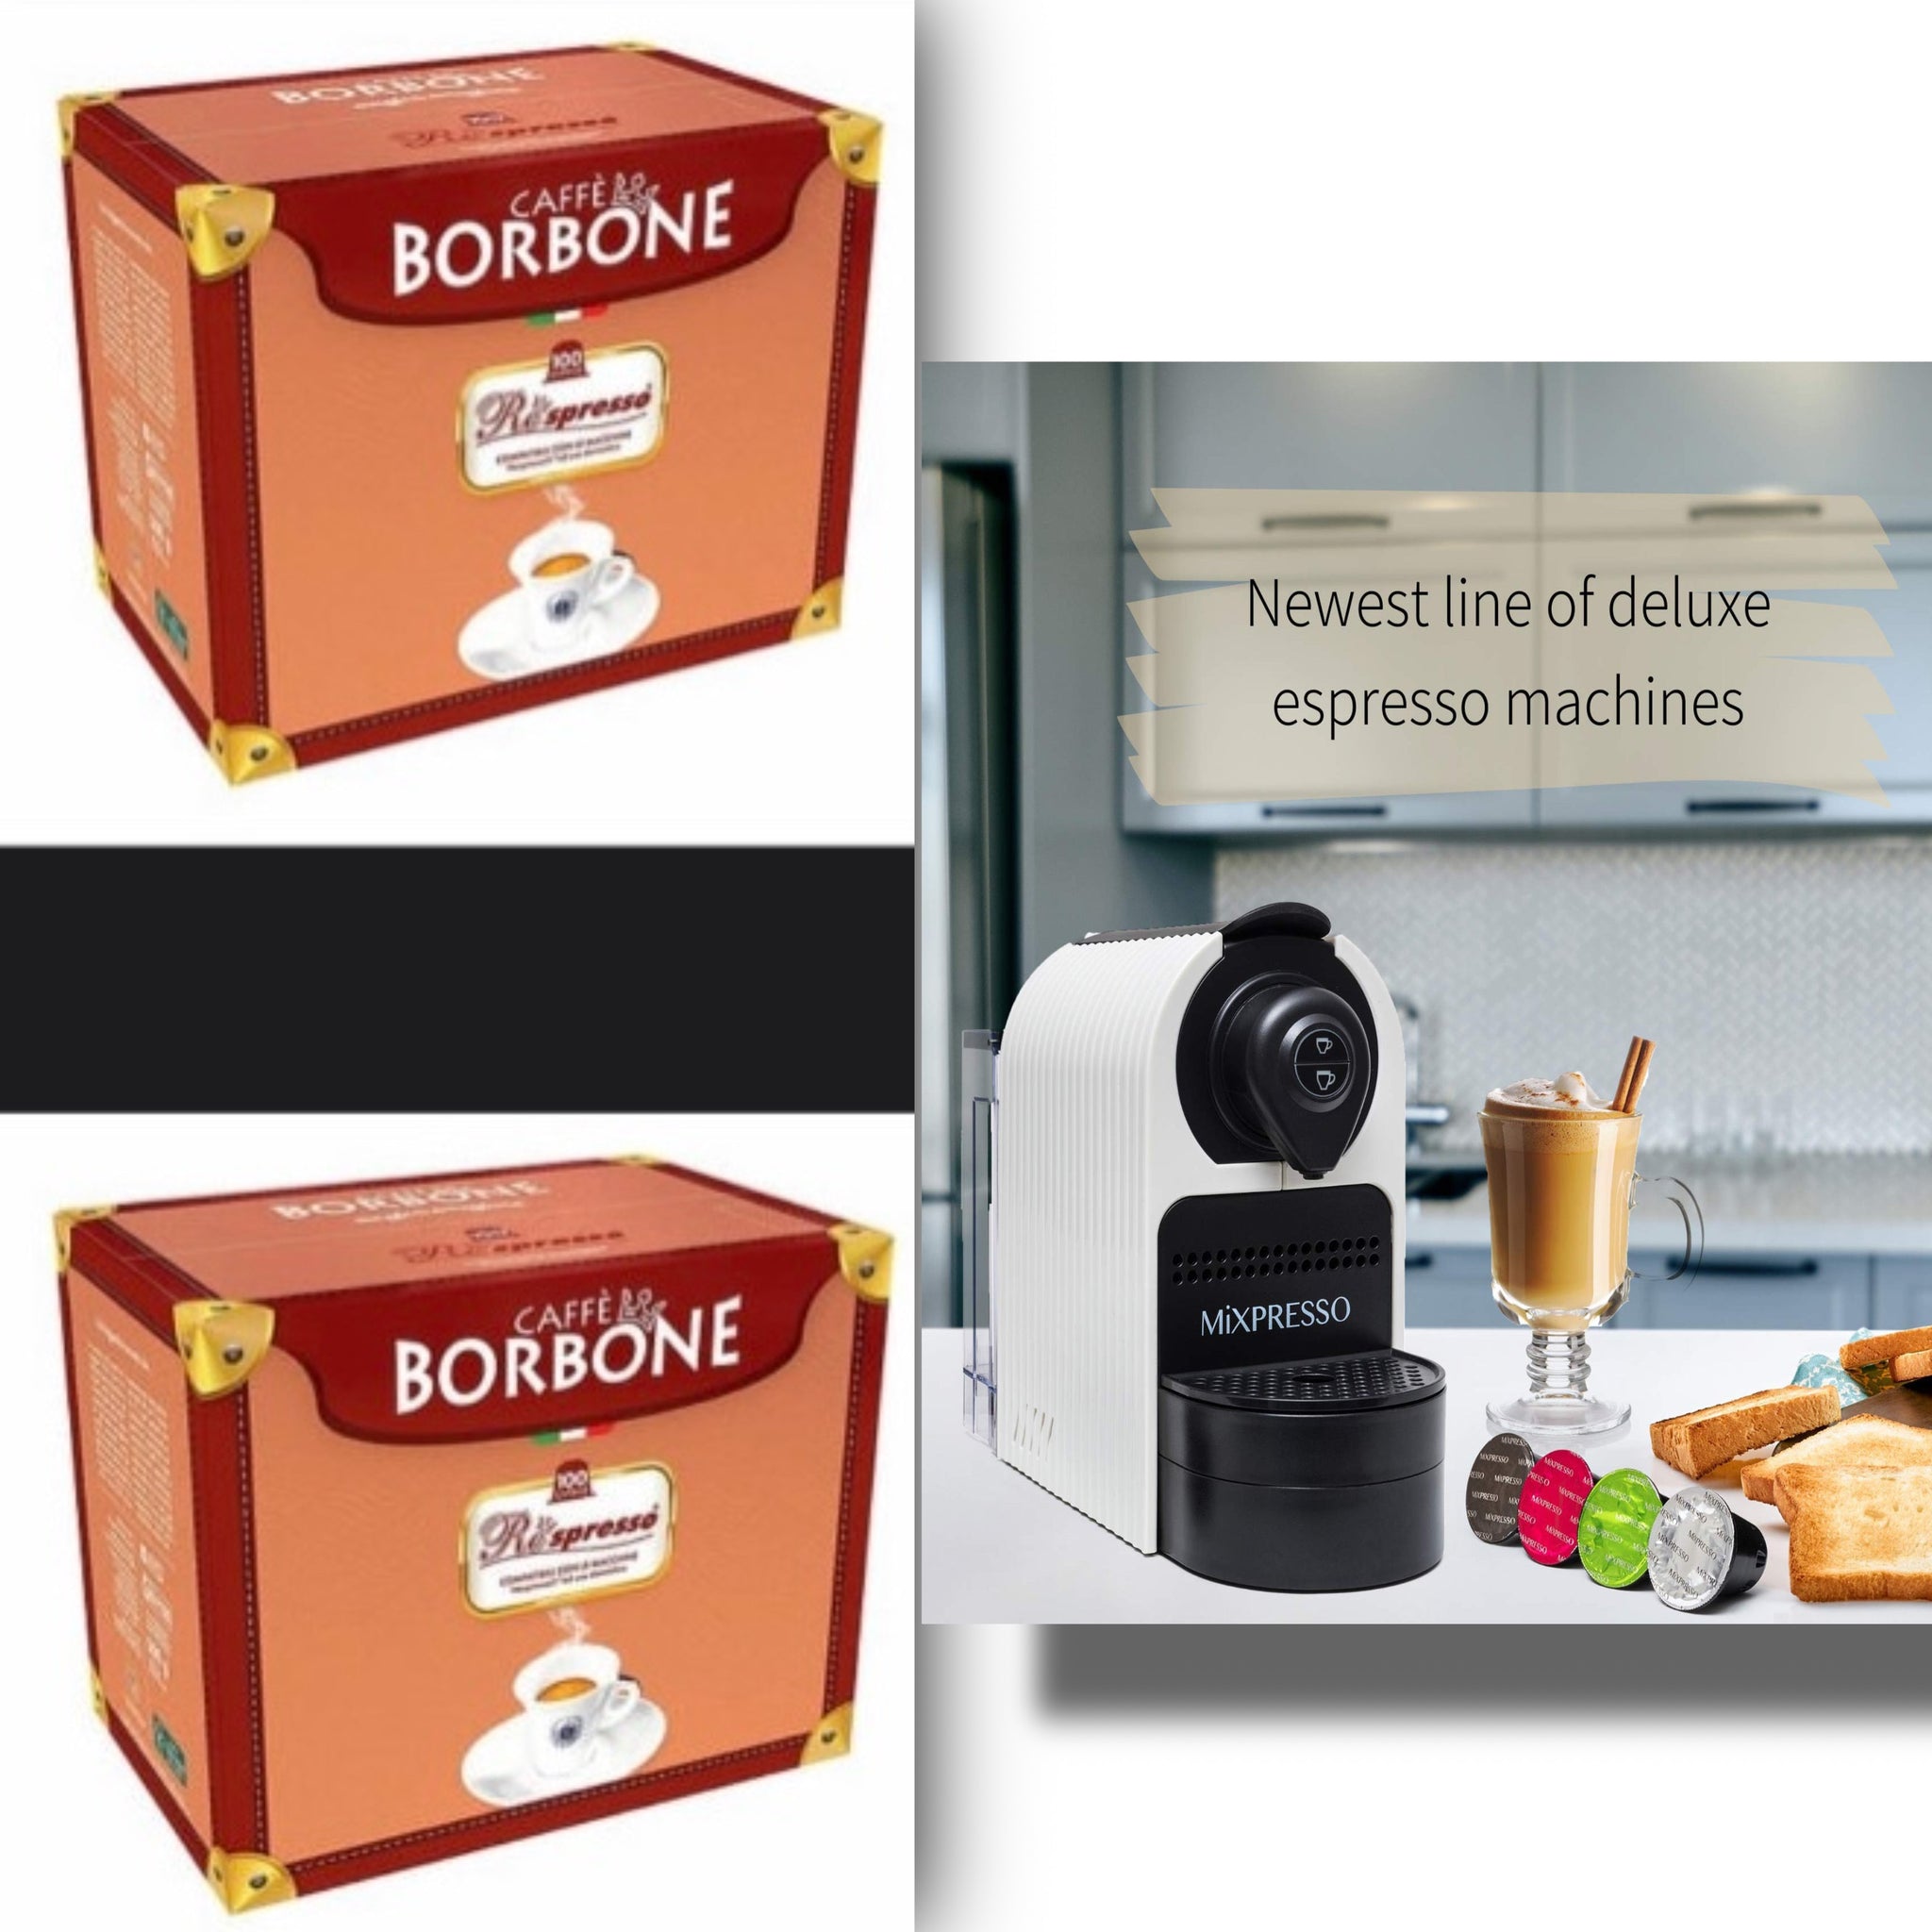 Mixpresso Espresso Machine for Nespresso Compatible Capsule